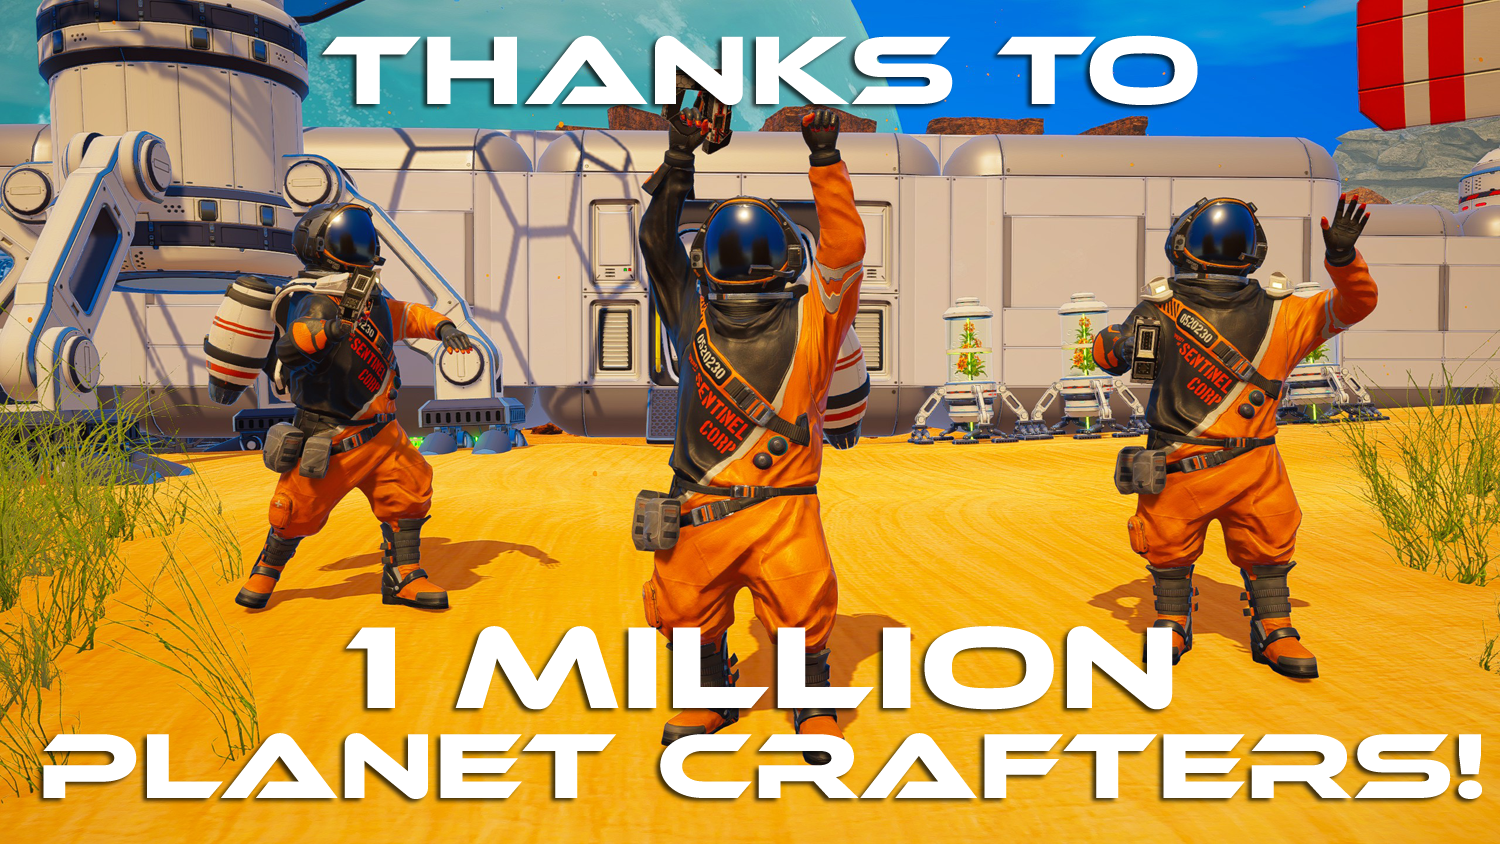 太空生存建设游戏《星球工匠》销量已突破100万 更多新内容准备中截图